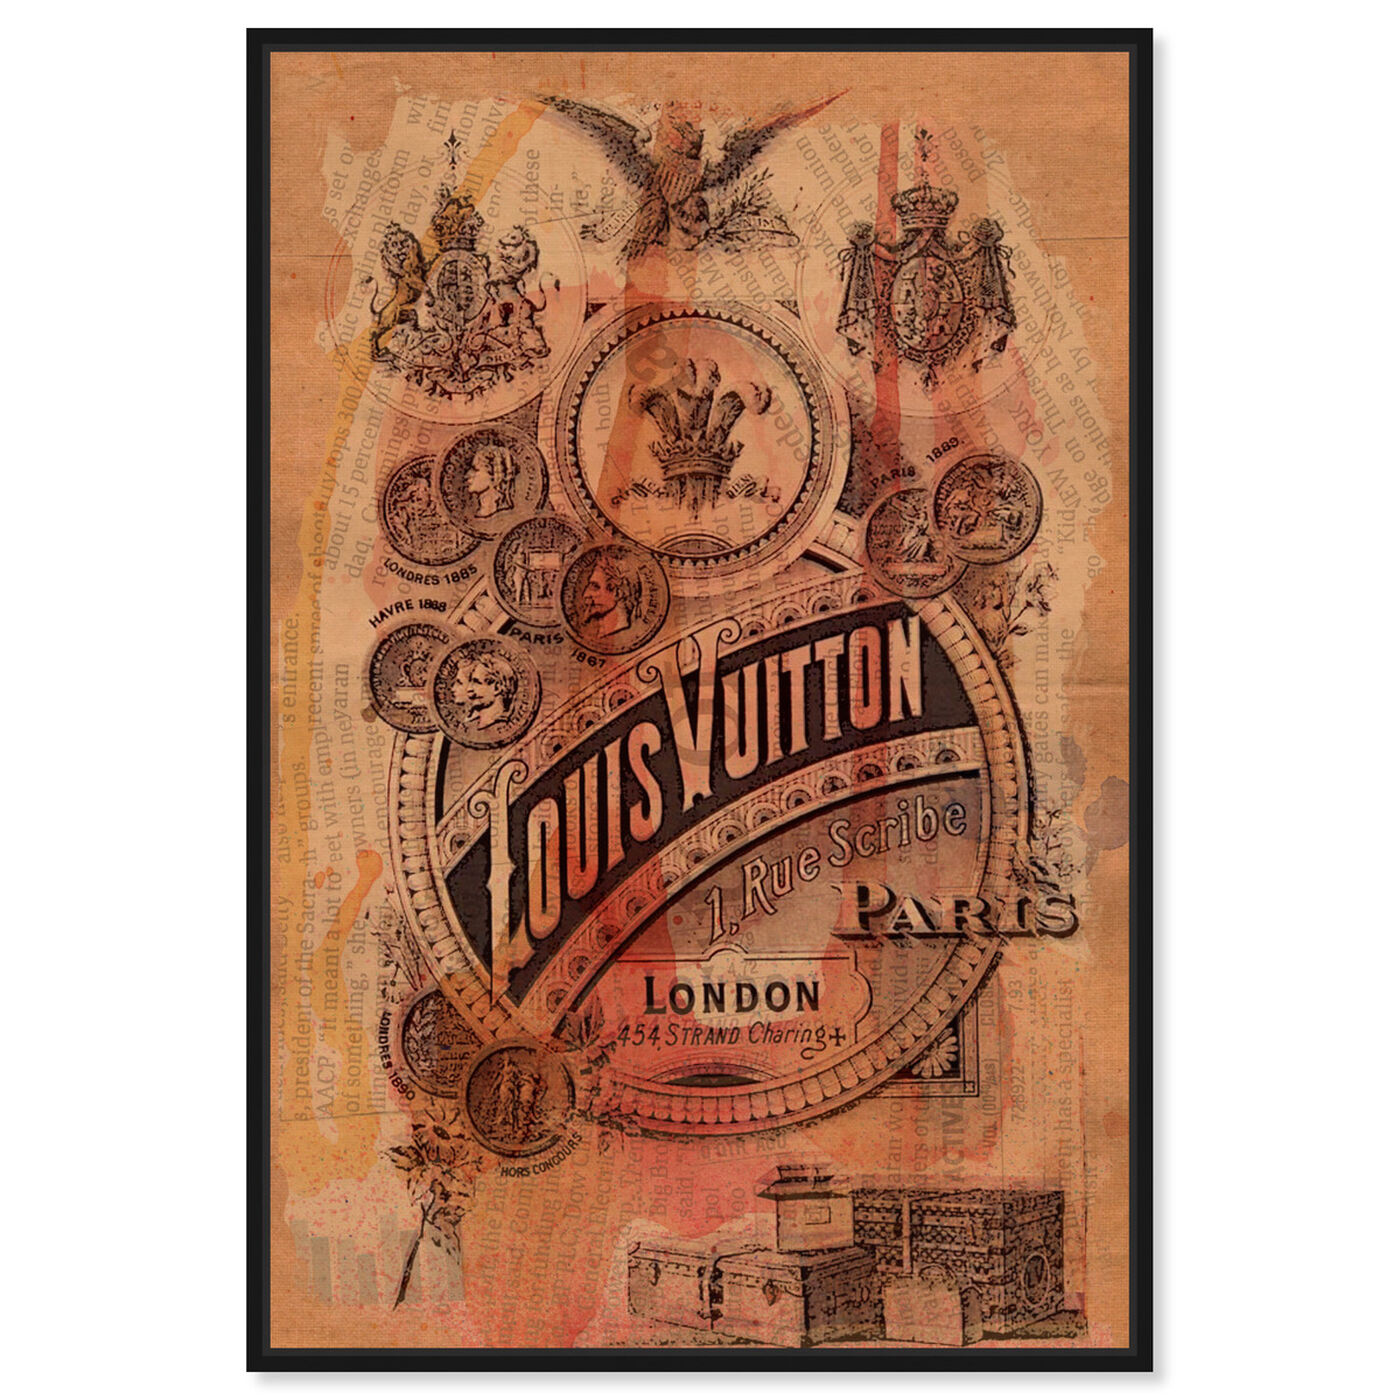 Vintage Louis Vuitton Advertisement Poster